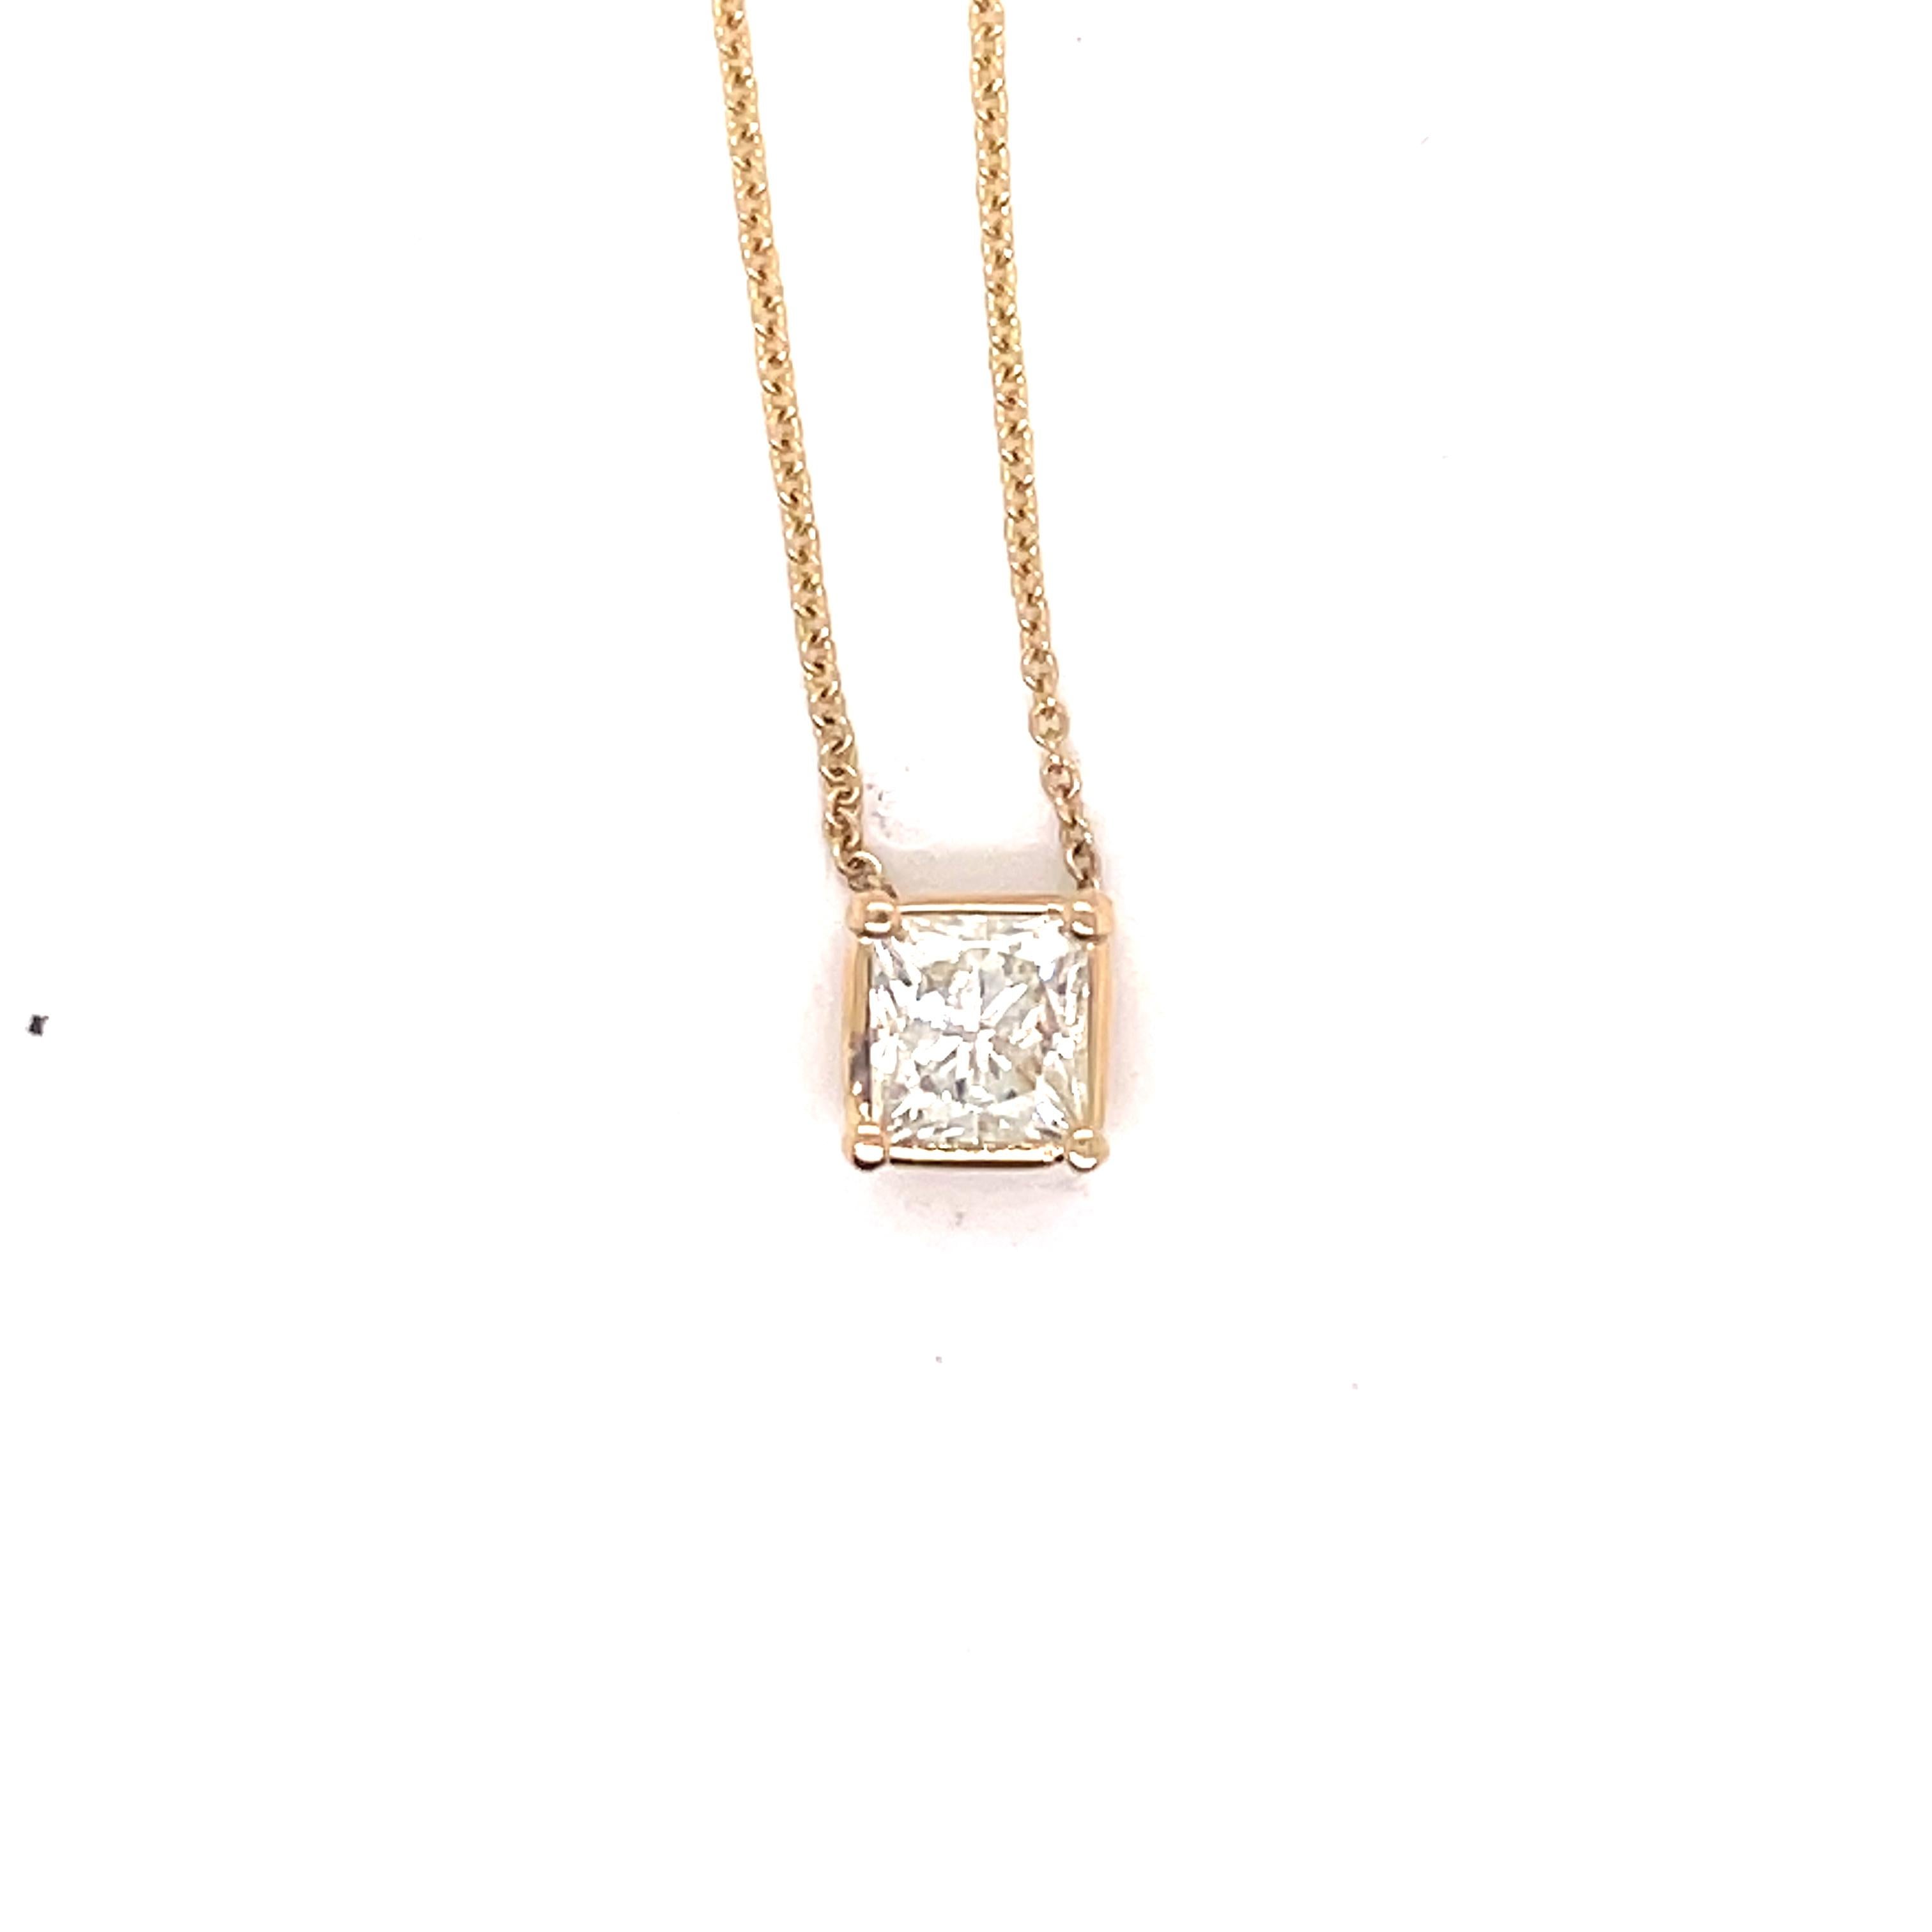 14K Yellow Gold Princess-Cut Diamond Pendant Necklace. Diamond weight ~ .40 carat

 Adjustable length 